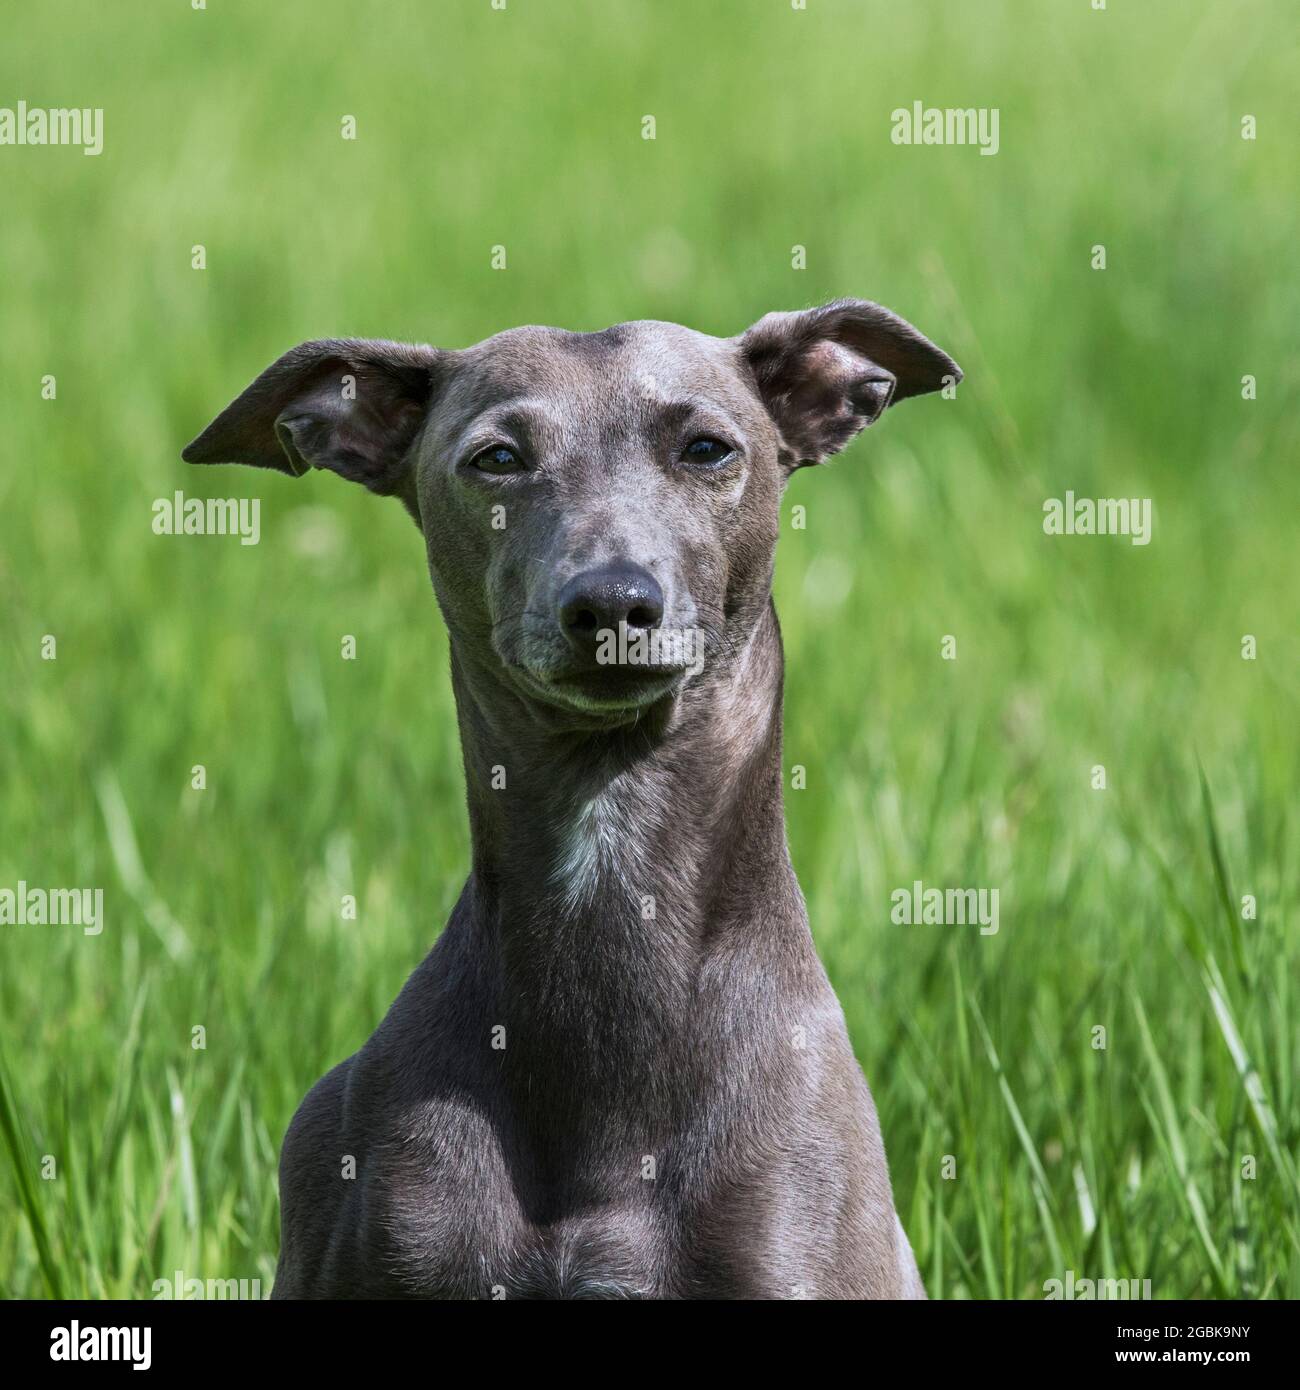 Italian Greyhound / Piccolo levriero Italiano / Italian Sighthound, la raza de perro más pequeña de los avistamientos, retrato de primeros planos Foto de stock